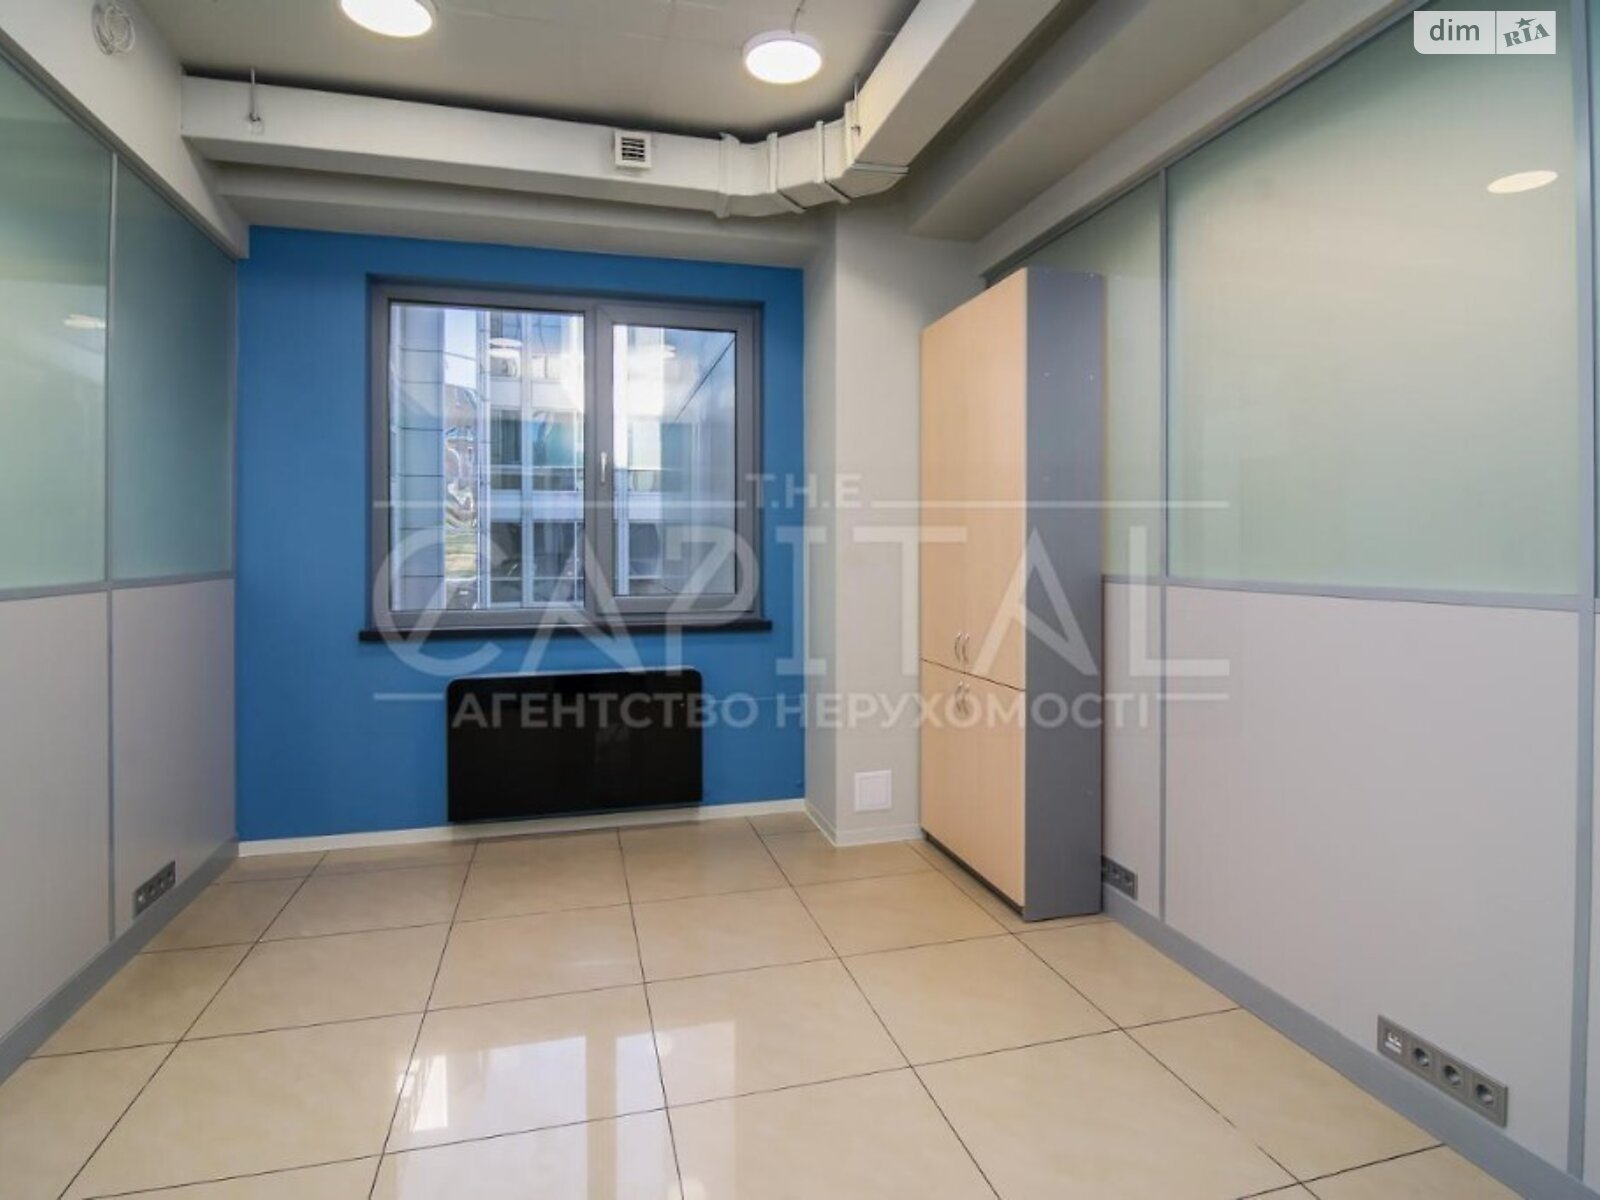 Аренда офисного помещения в Киеве, Спортивная площадь 3, помещений - 6, этаж - 2 фото 1